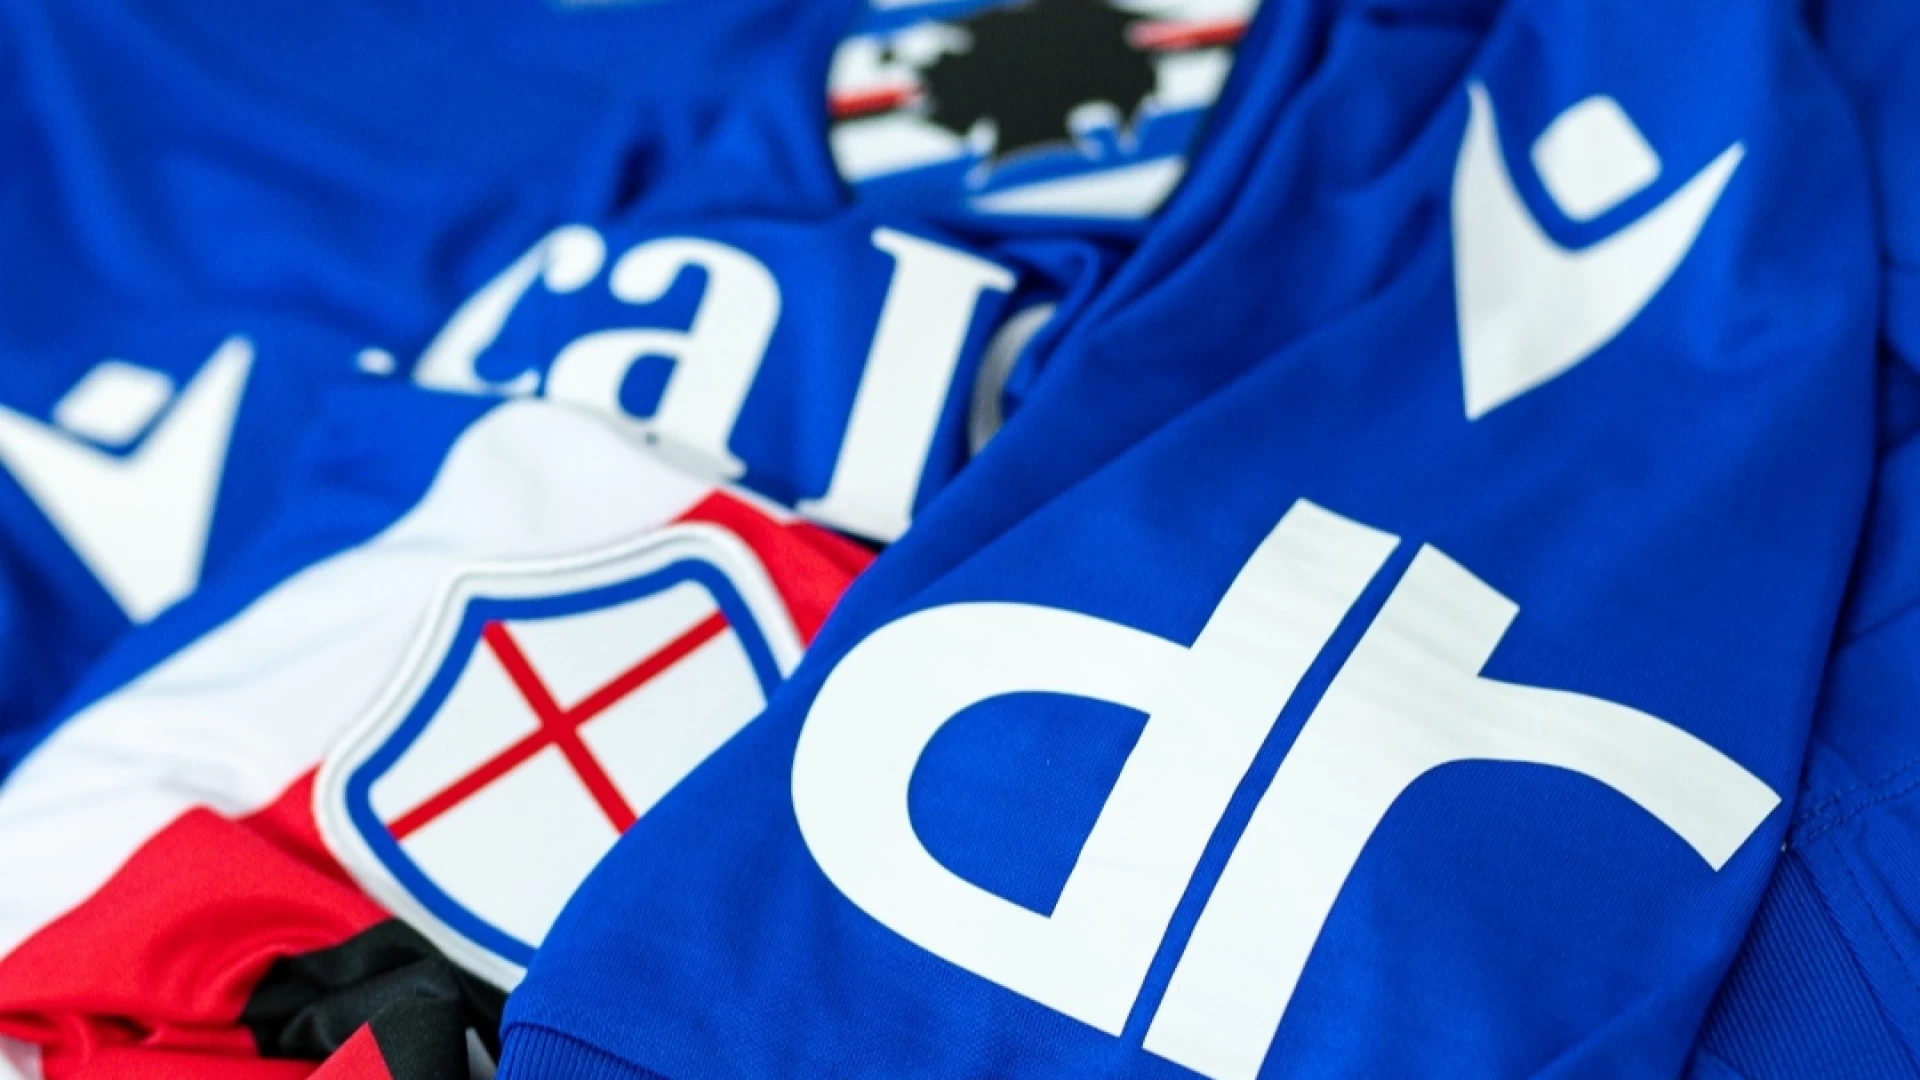 DR è sleeve sponsor della Sampdoria per la stagione 2022/23.